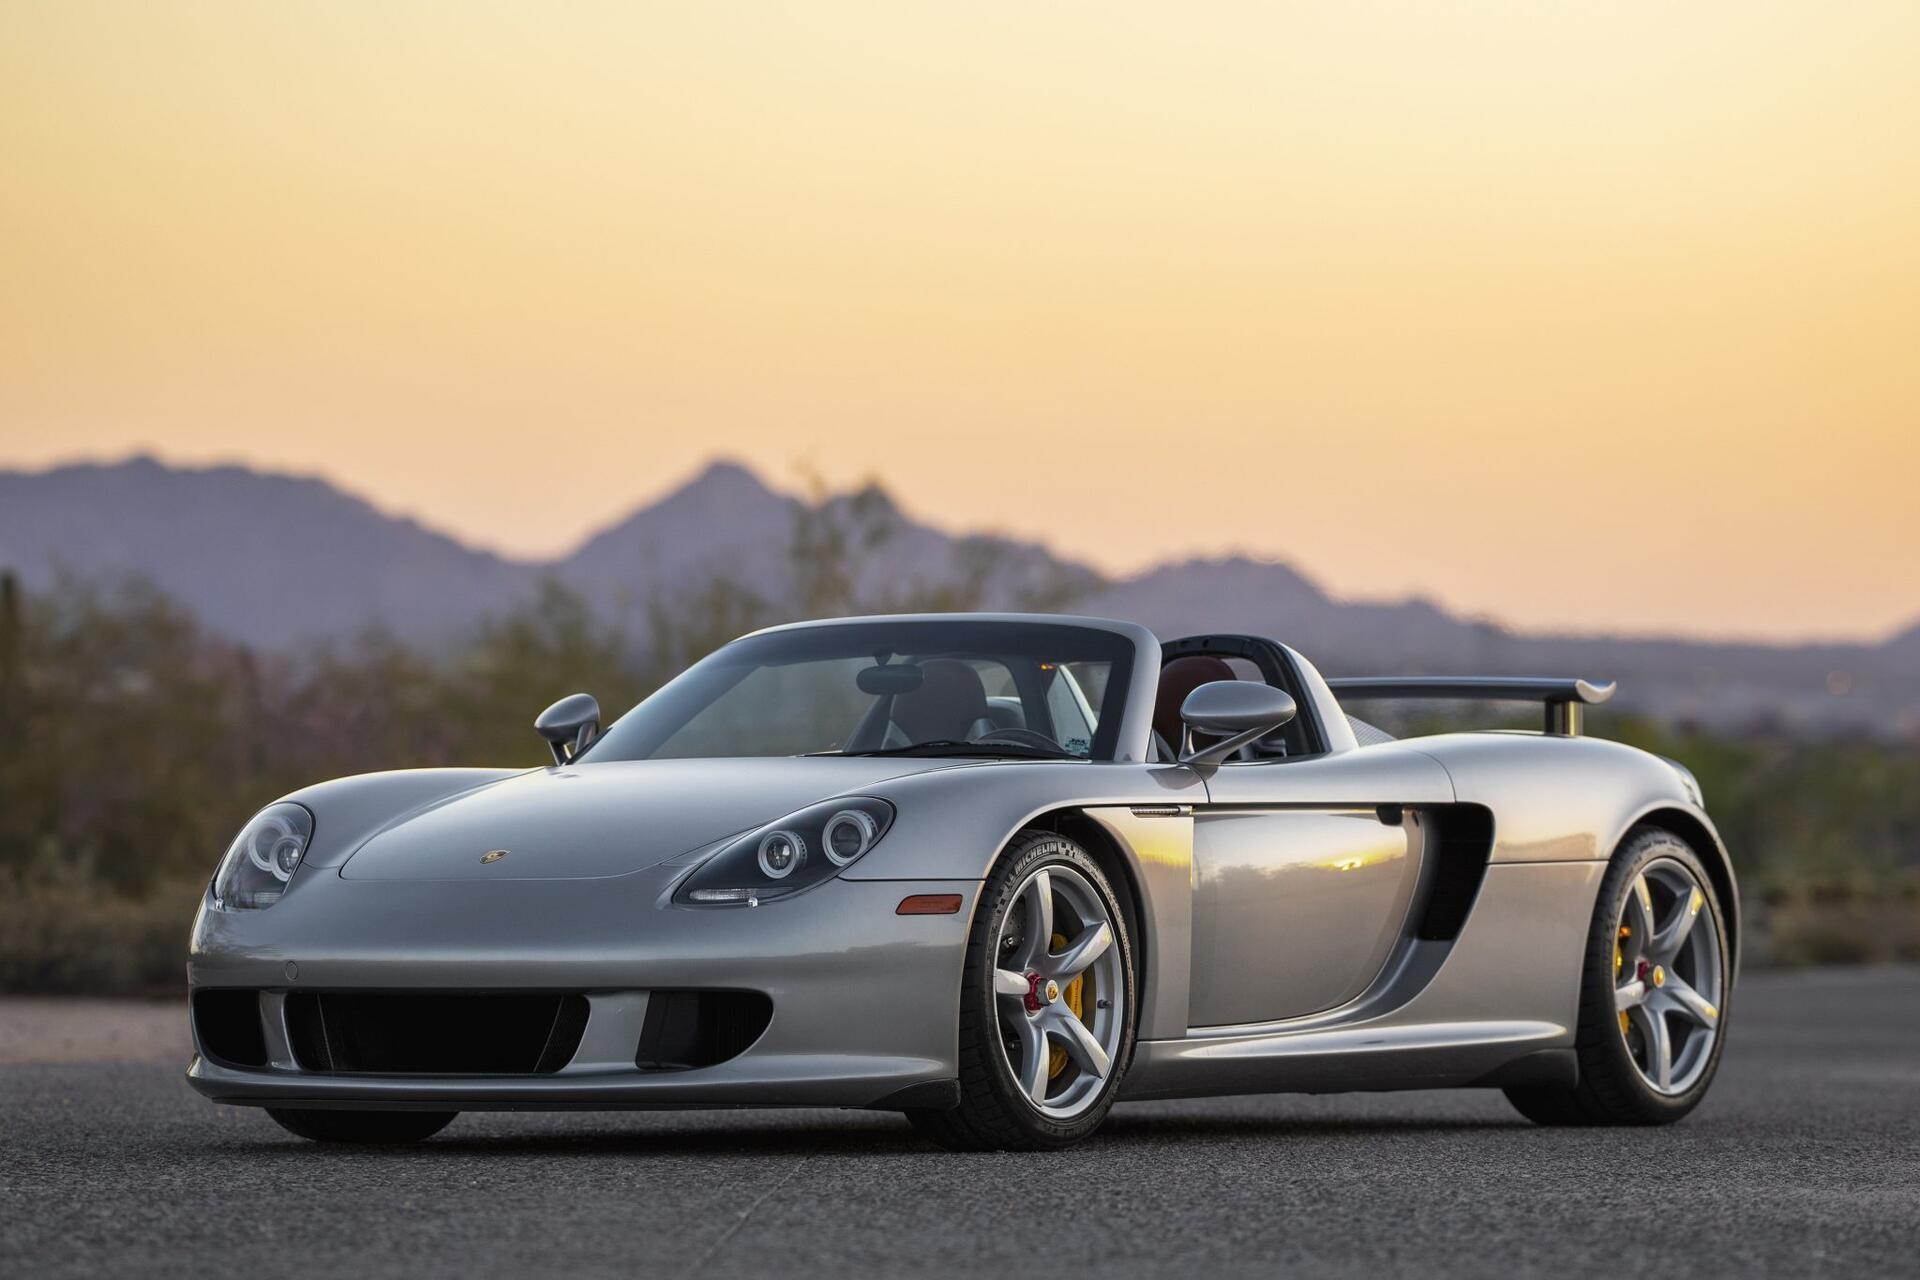 Porsche Carrera GT hàng hiếm được bán đấu giá lên đến 1 triệu USD